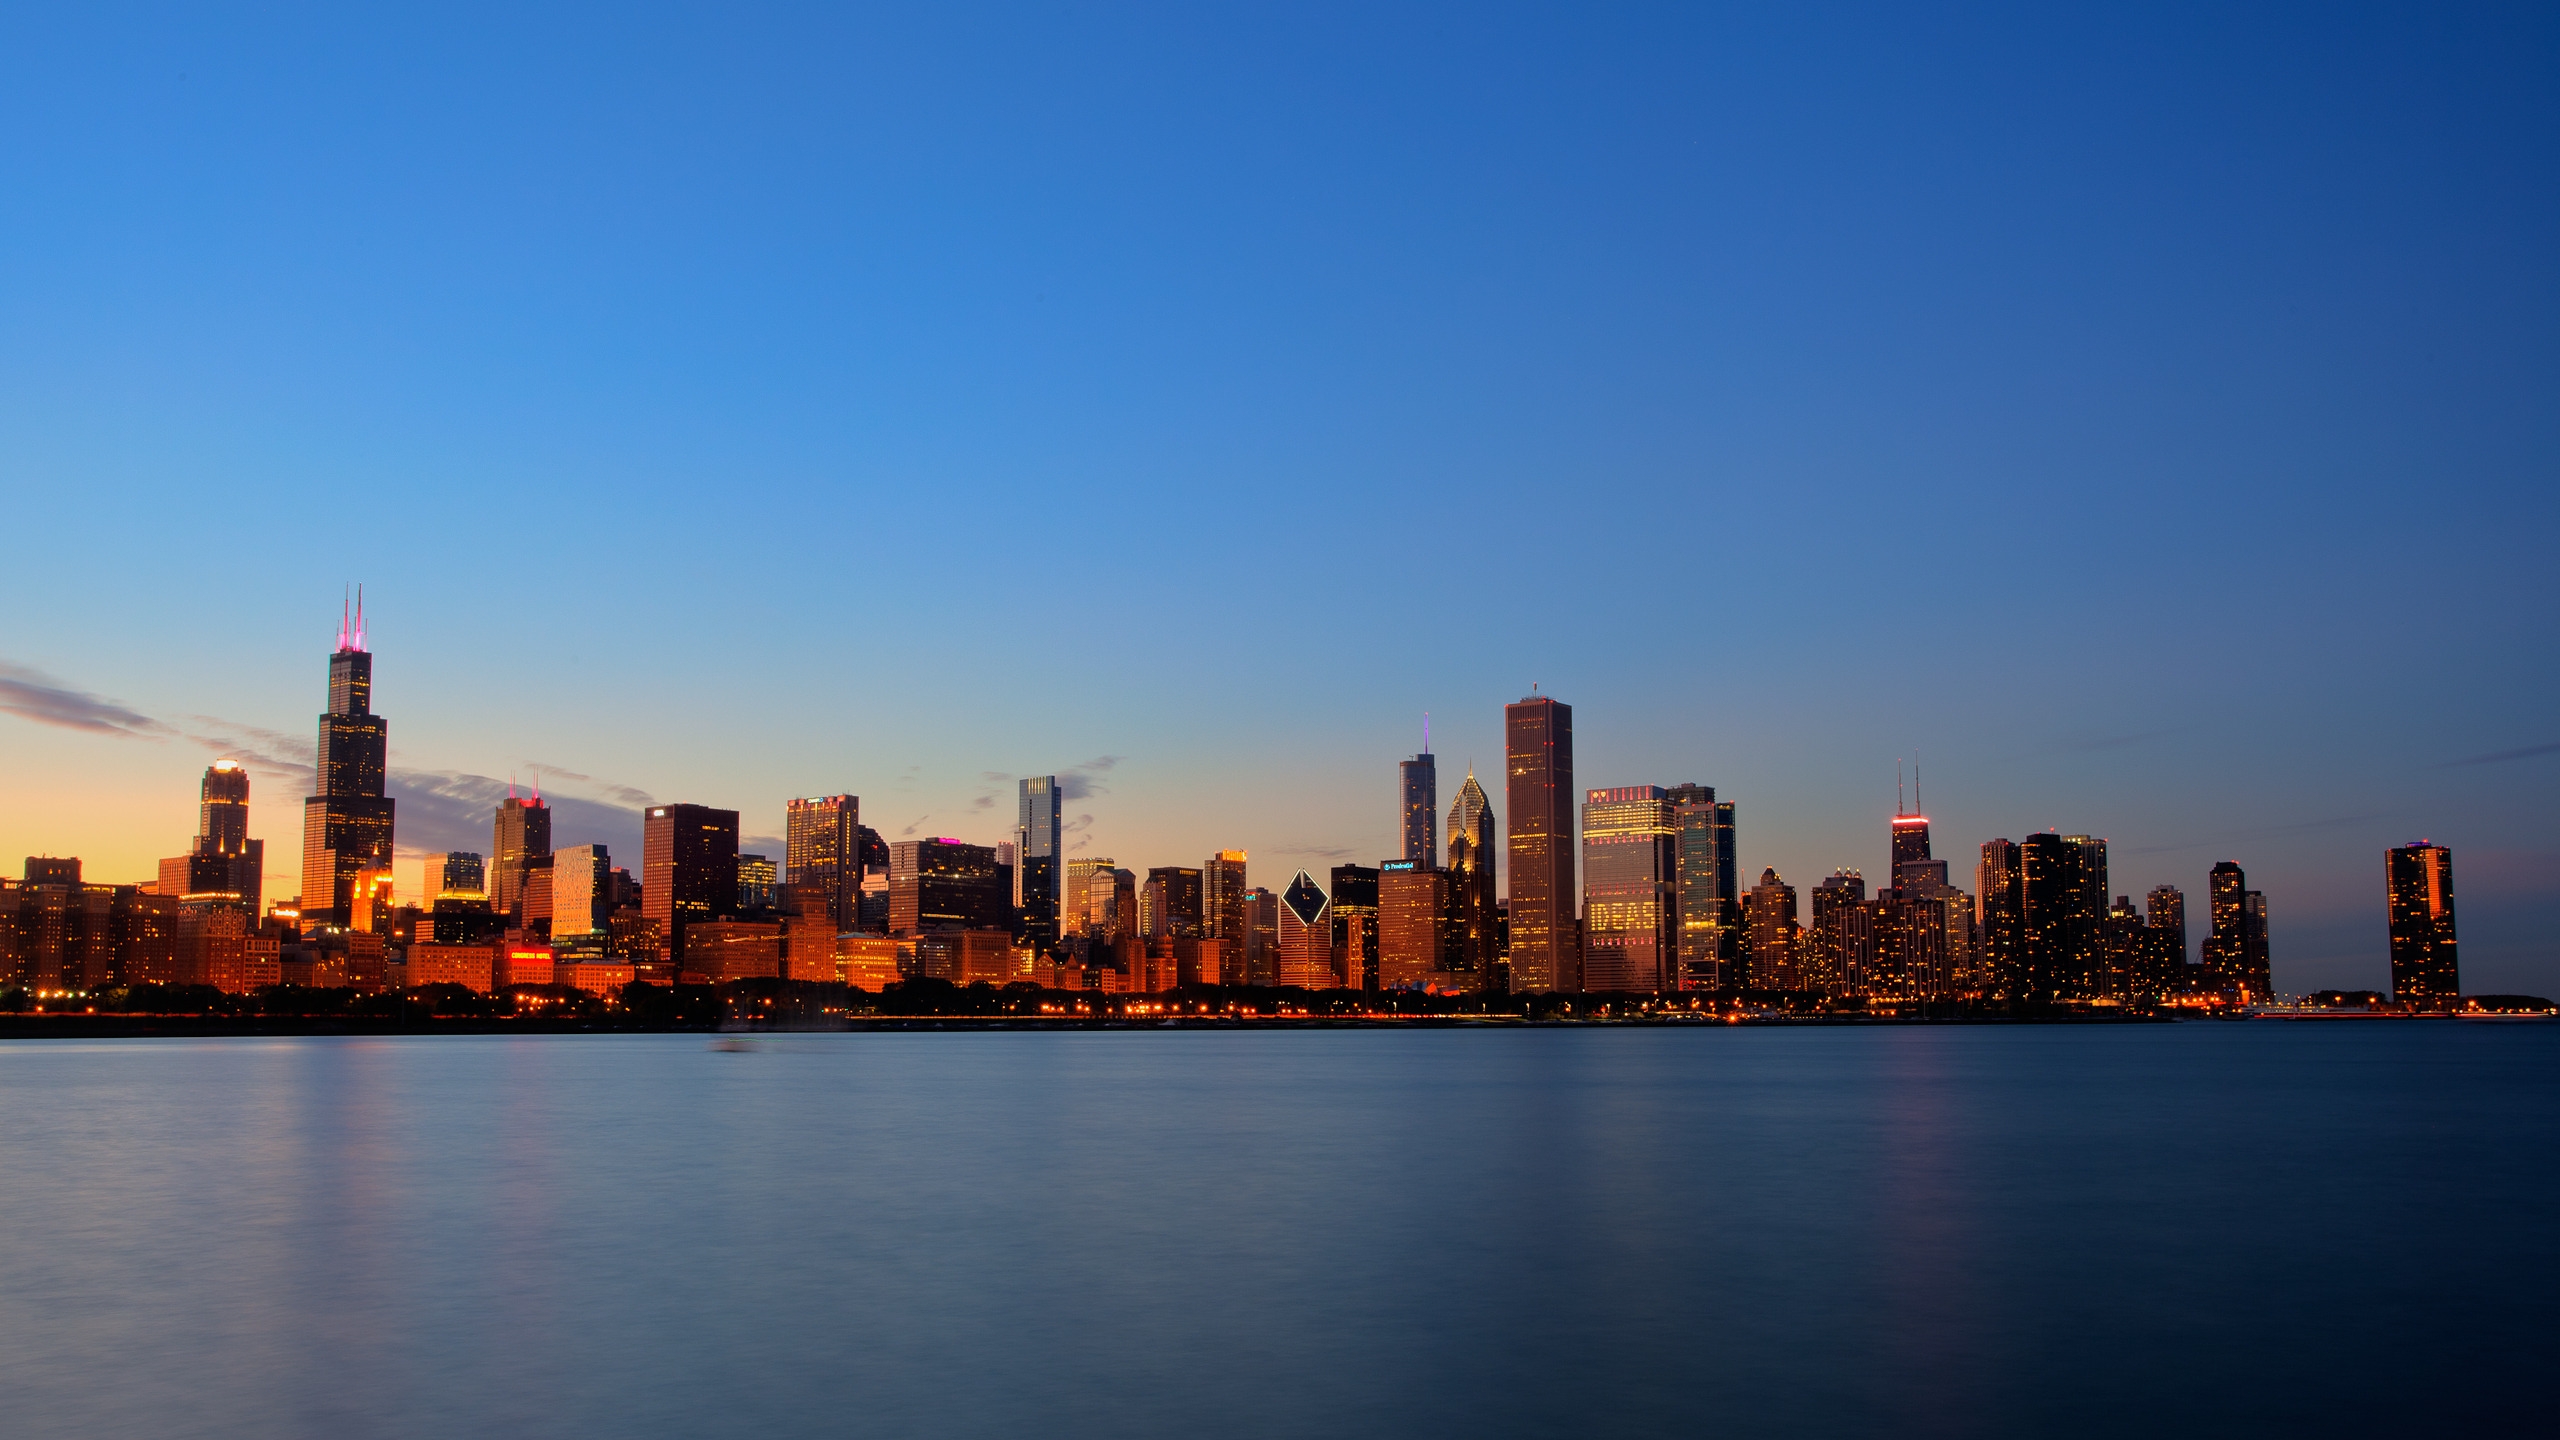 Chicago Skyline for 2560x1440 HDTV resolution